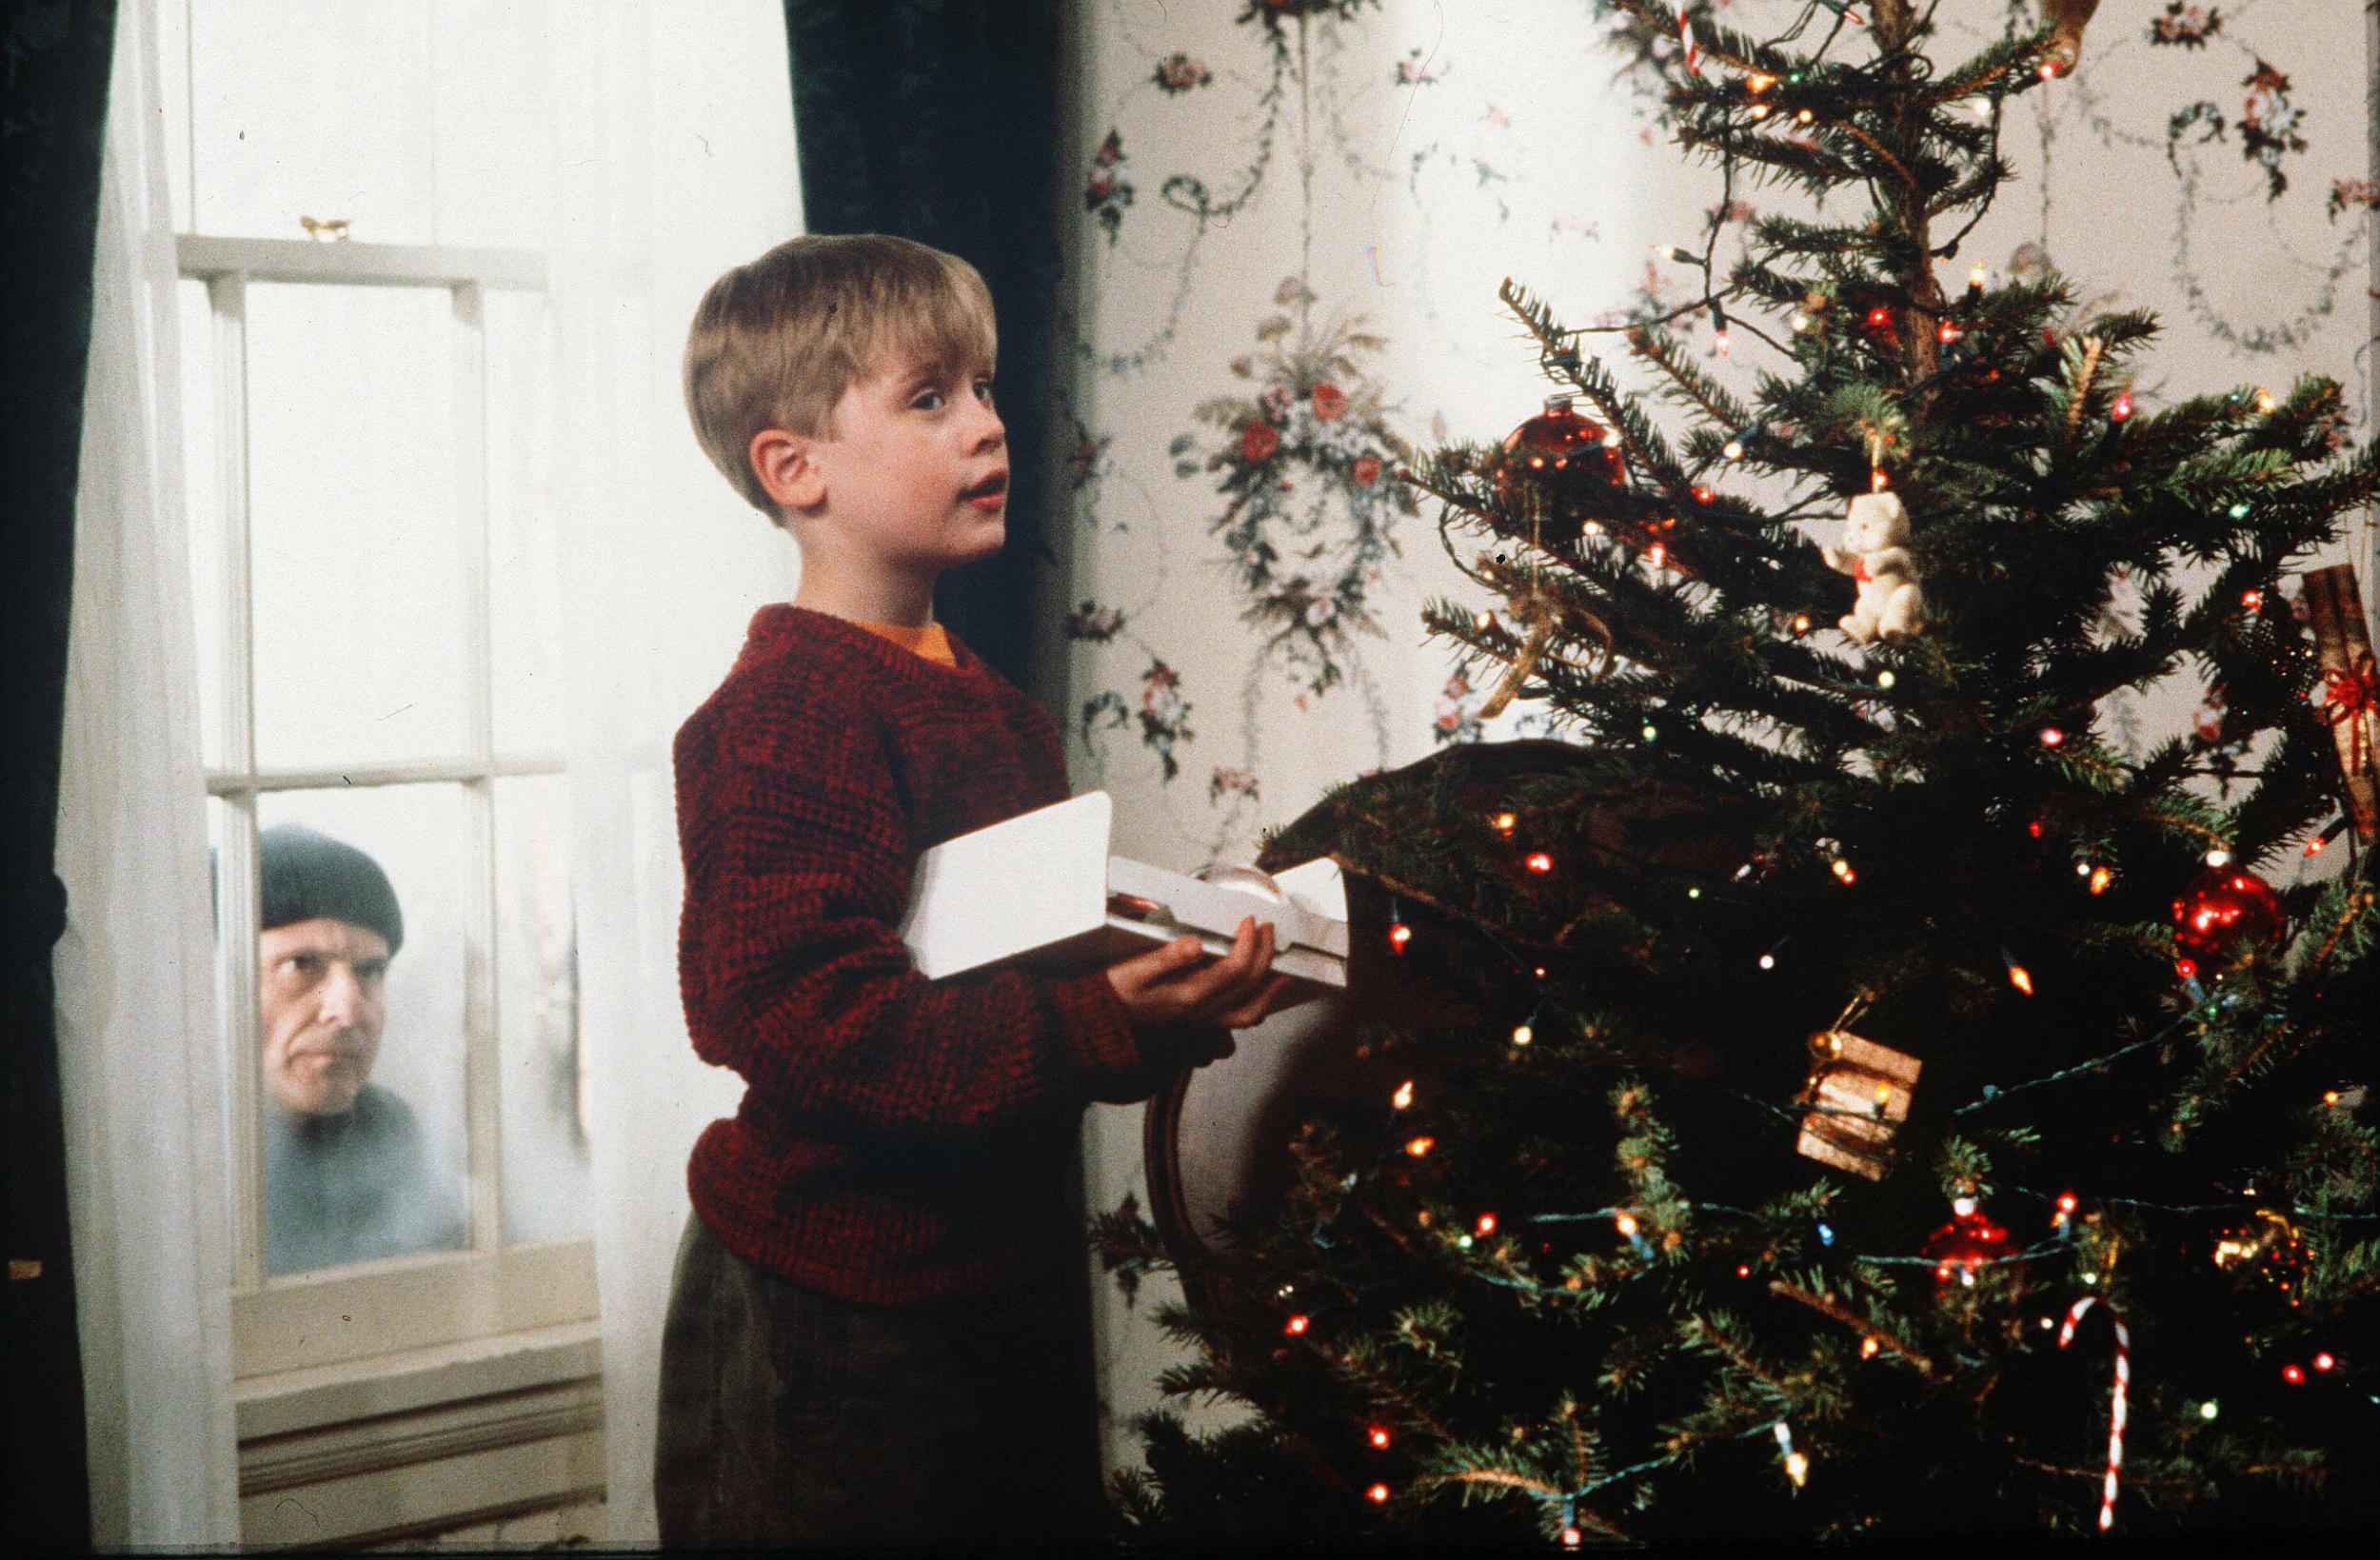 Maucalay Culkin, que interpreta a Kevin McCallister, decora un árbol de Navidad mientras Joe Pesci de ladrón mira hacia el interior de la casa en Winnetka, Illinois, un suburbio al norte de Chicago